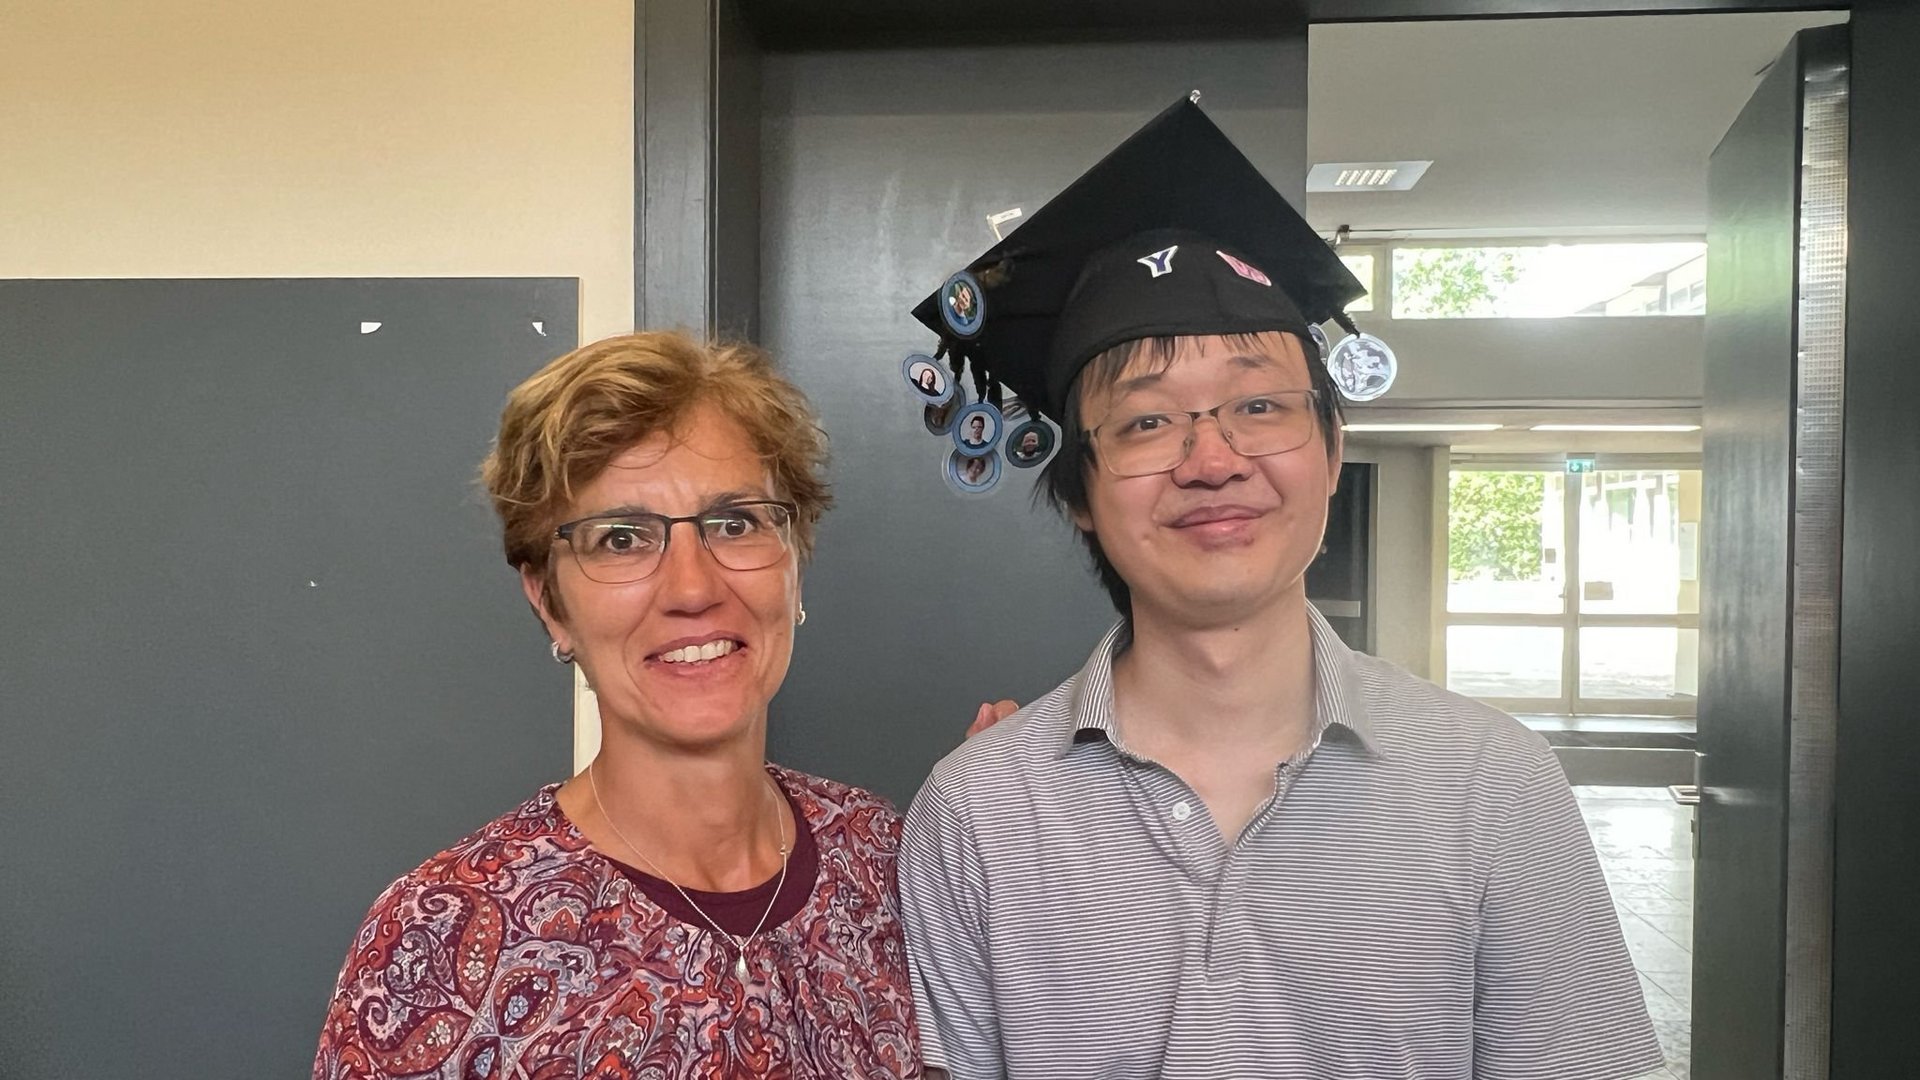 Researcher wearing PhD hat